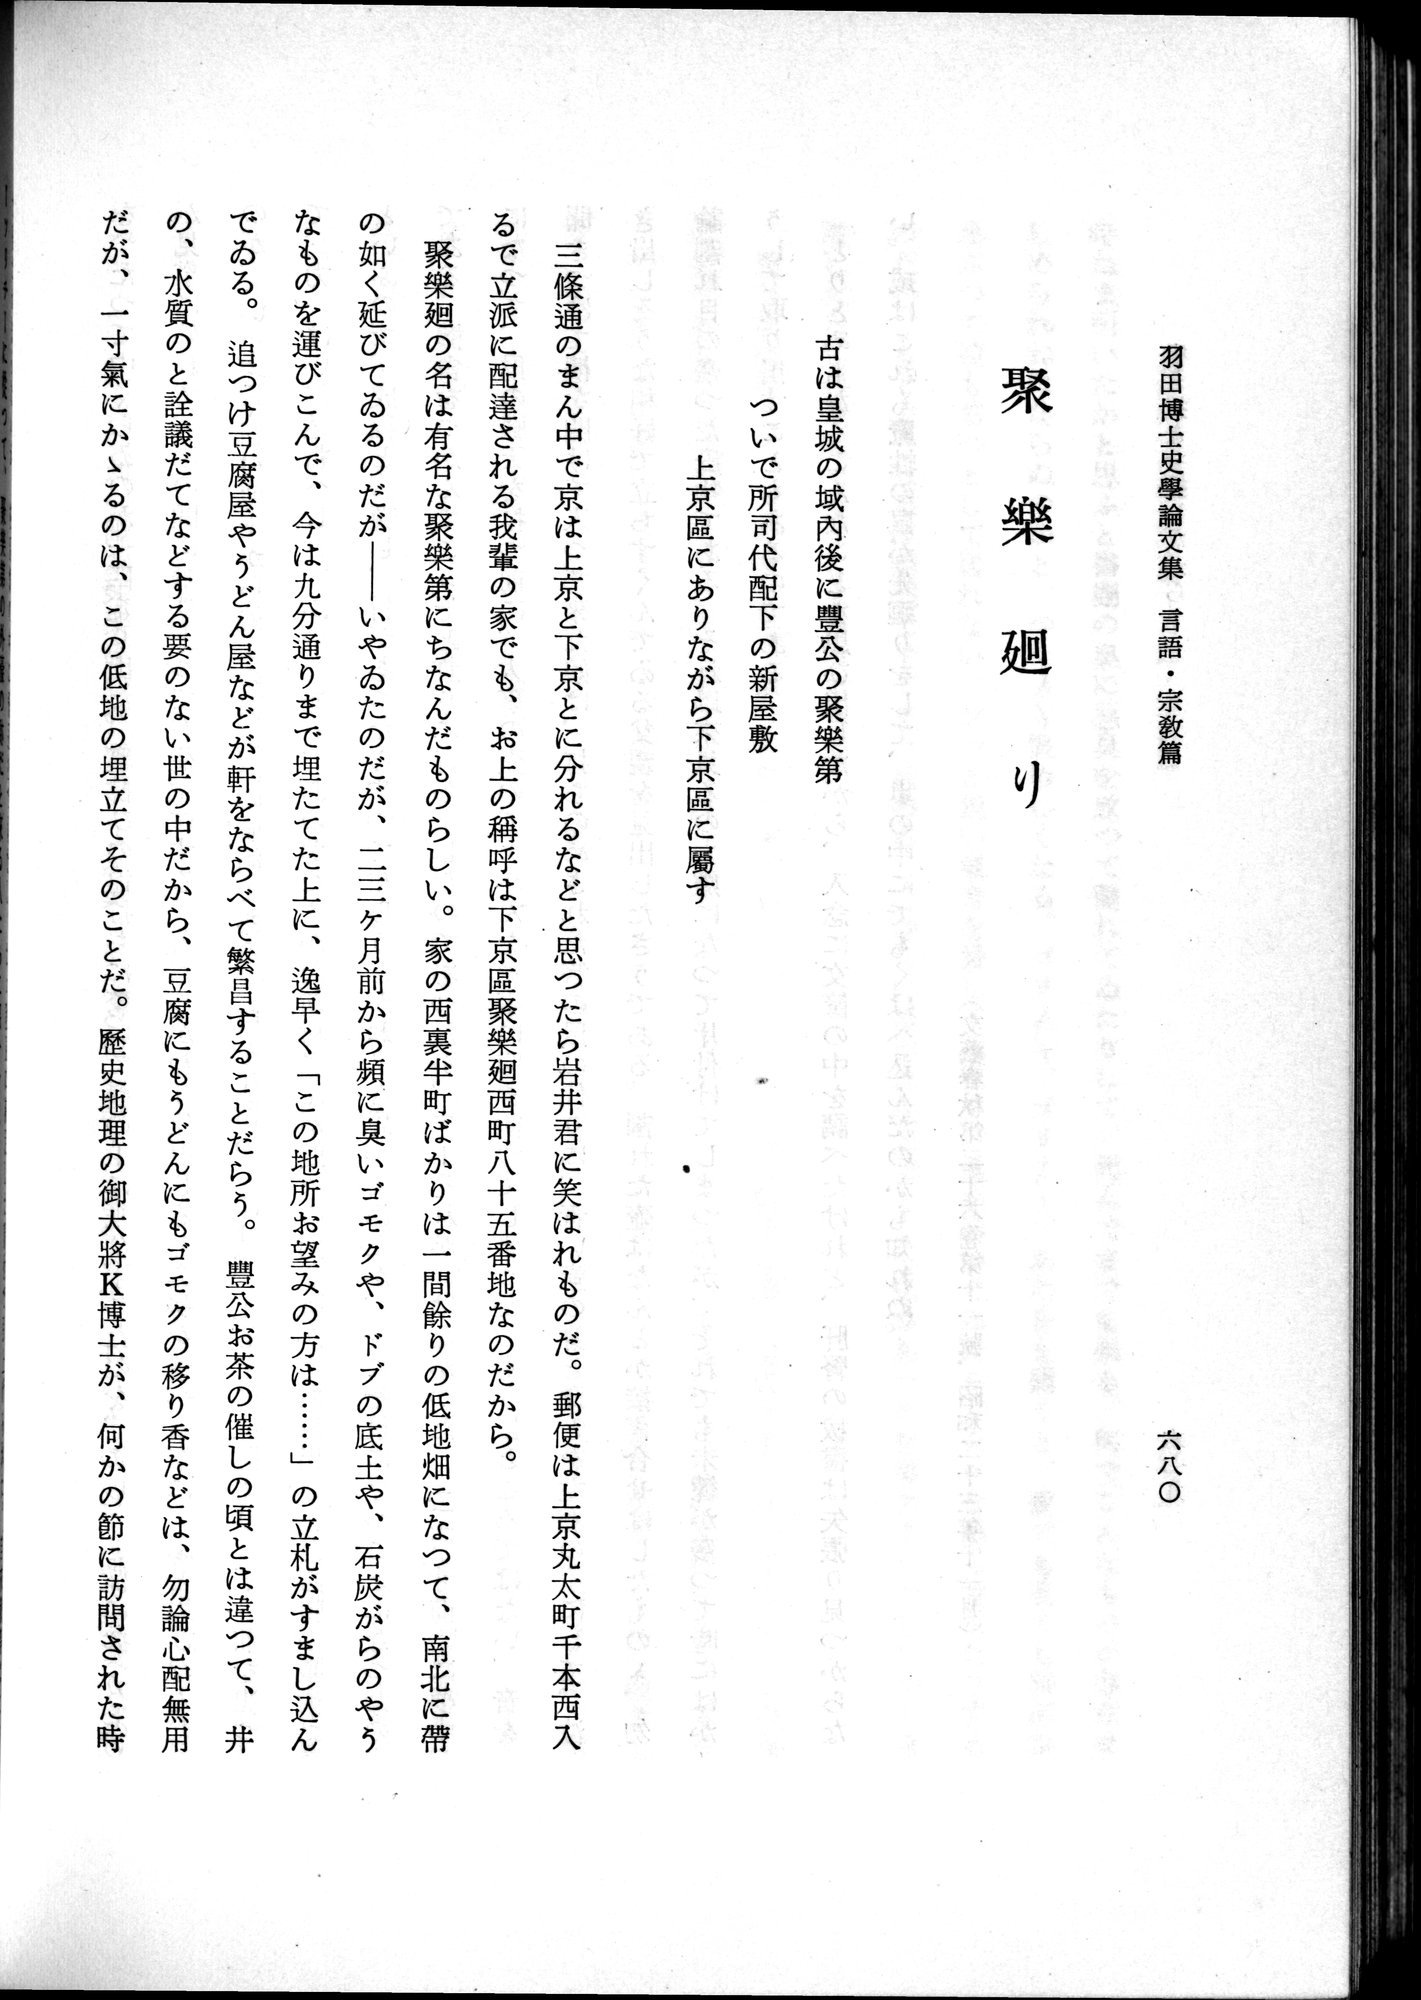 羽田博士史学論文集 : vol.2 / 744 ページ（白黒高解像度画像）